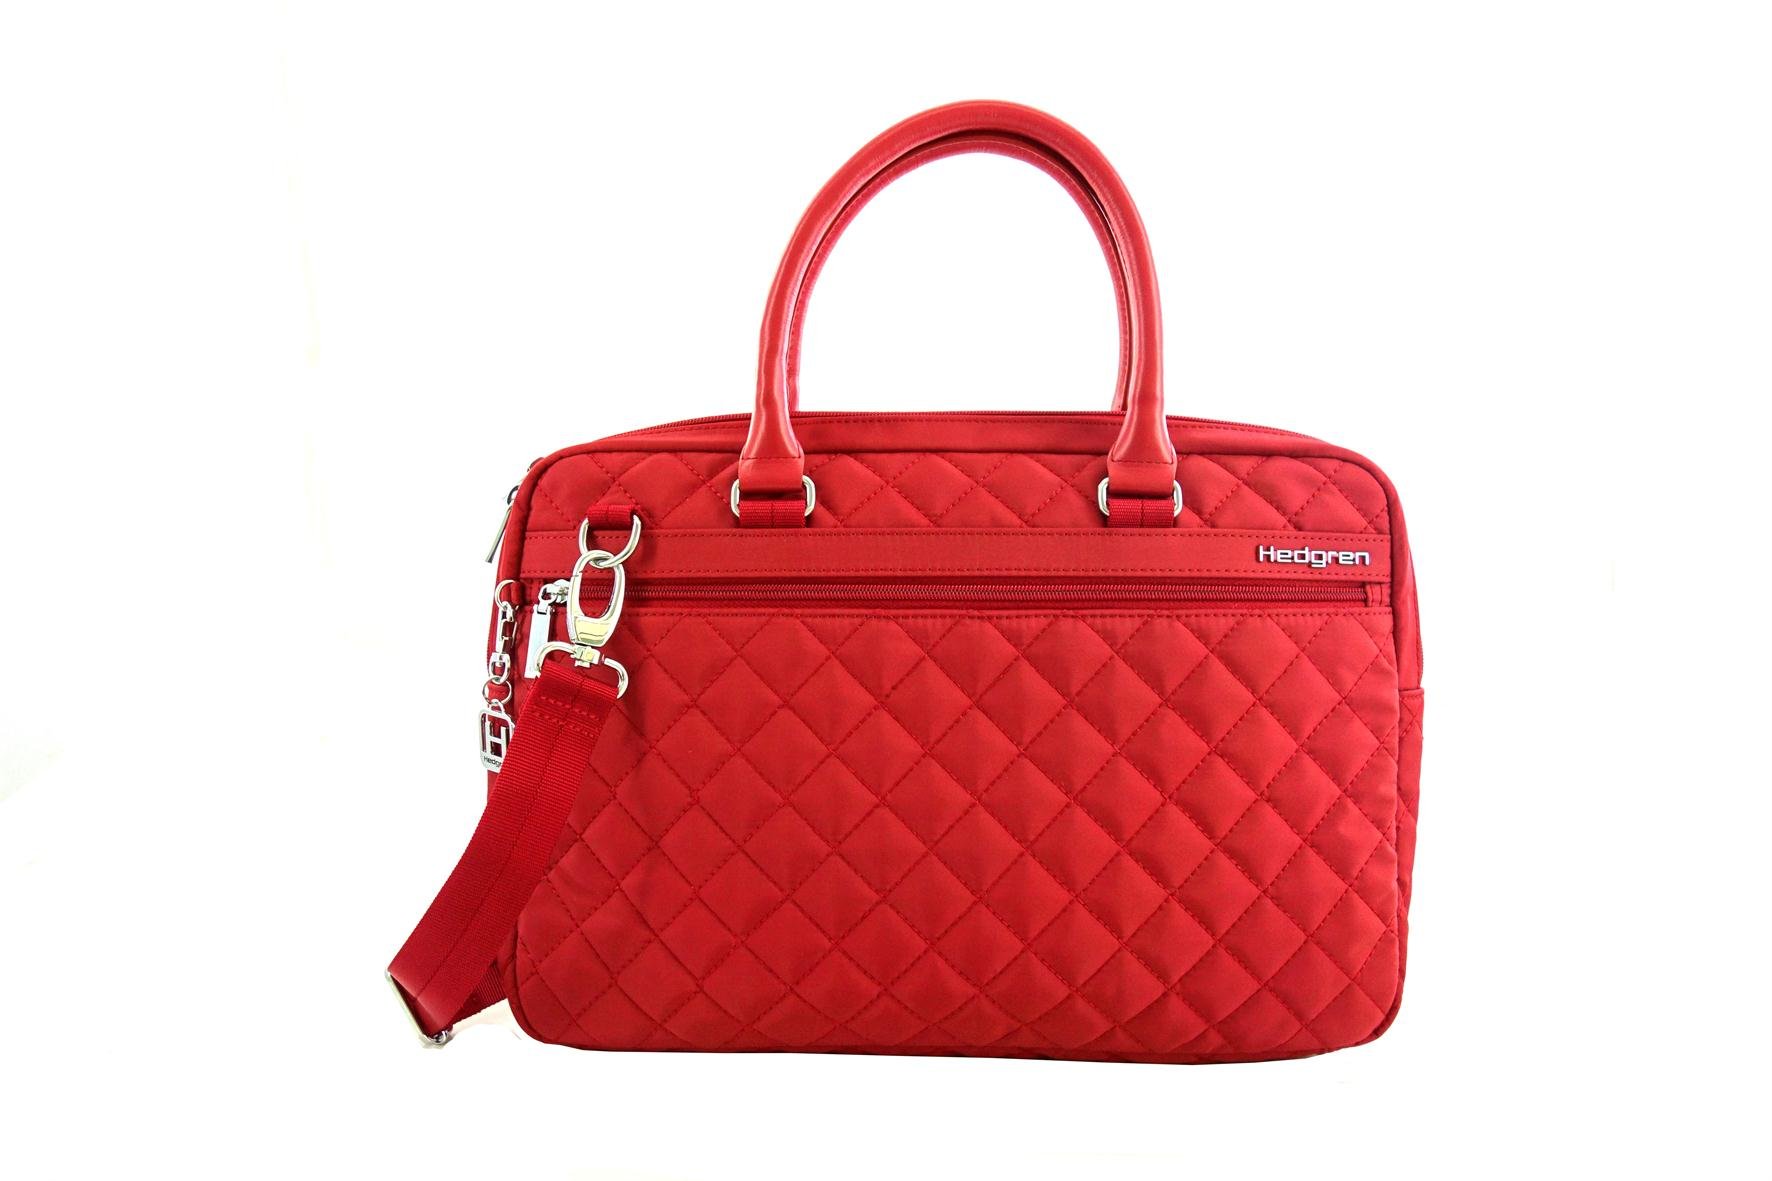 Hedgren Bella Attache Handbag, Business Tote Bag with Removable Shoulder Strap, 10